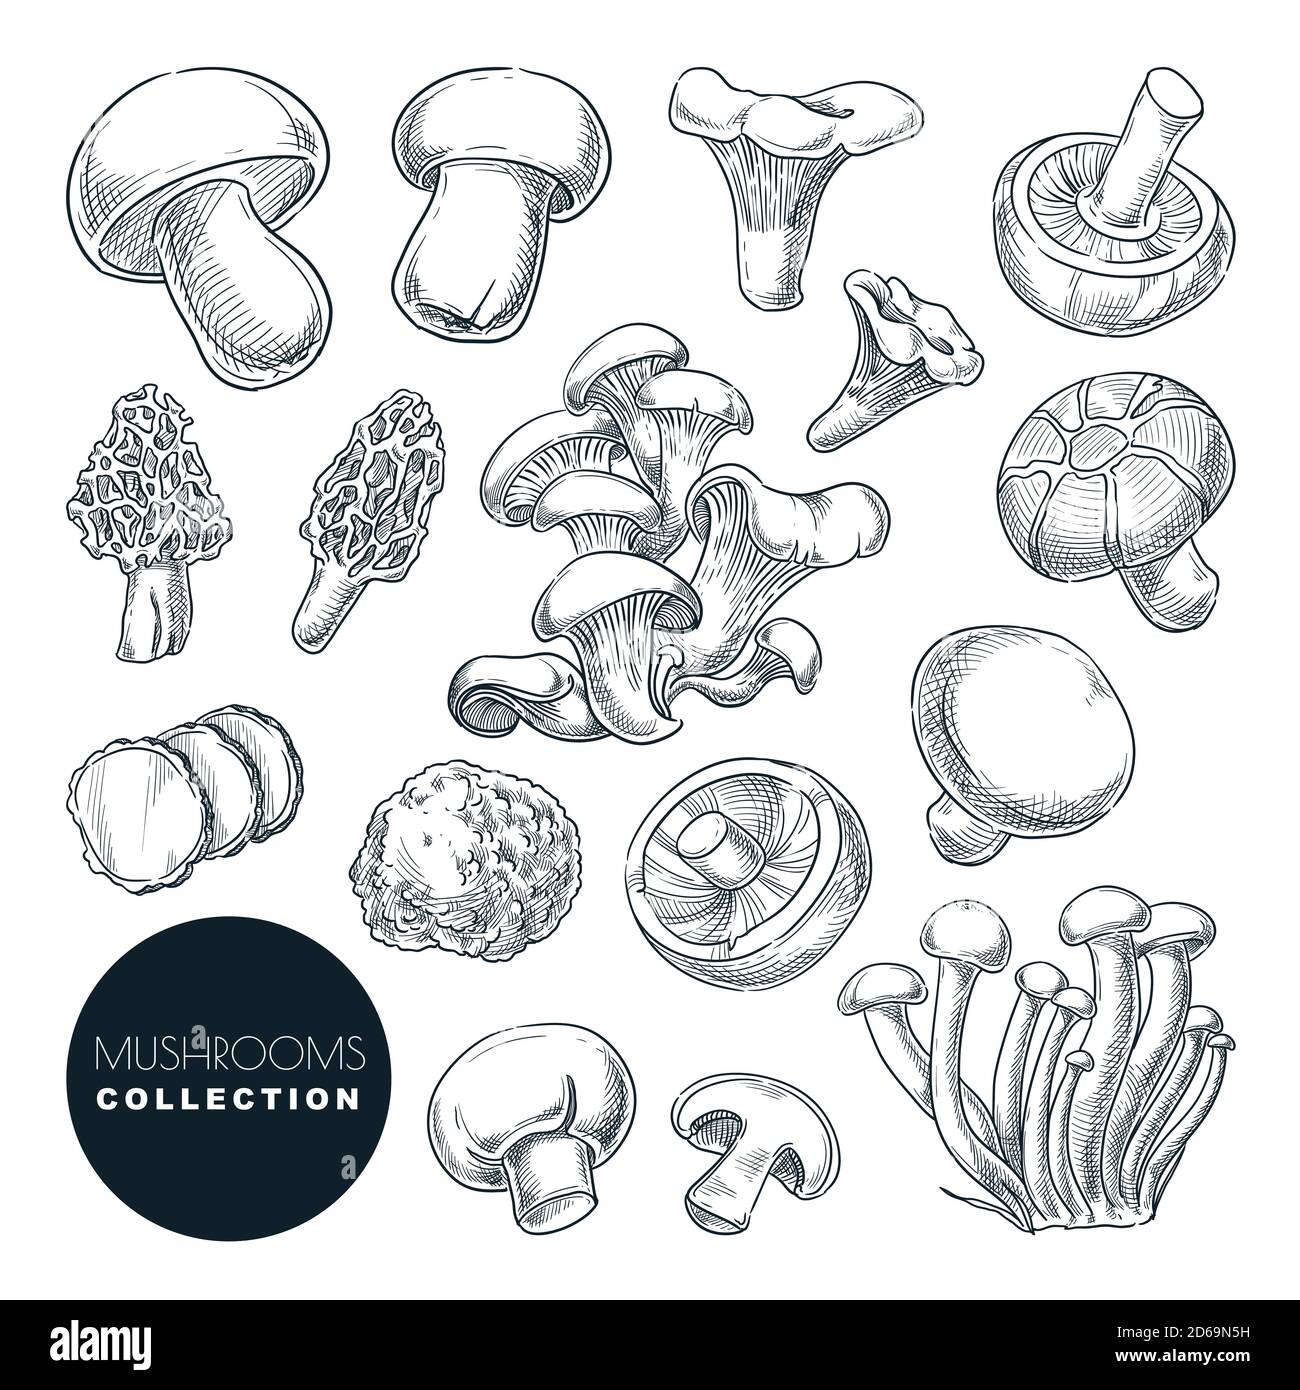 Raccolta di funghi, illustrazione vettoriale dello schizzo. Ingredienti alimentari disegnati a mano elementi di design isolati. Raccolta autunnale di funghi commestibili di foresta. Illustrazione Vettoriale